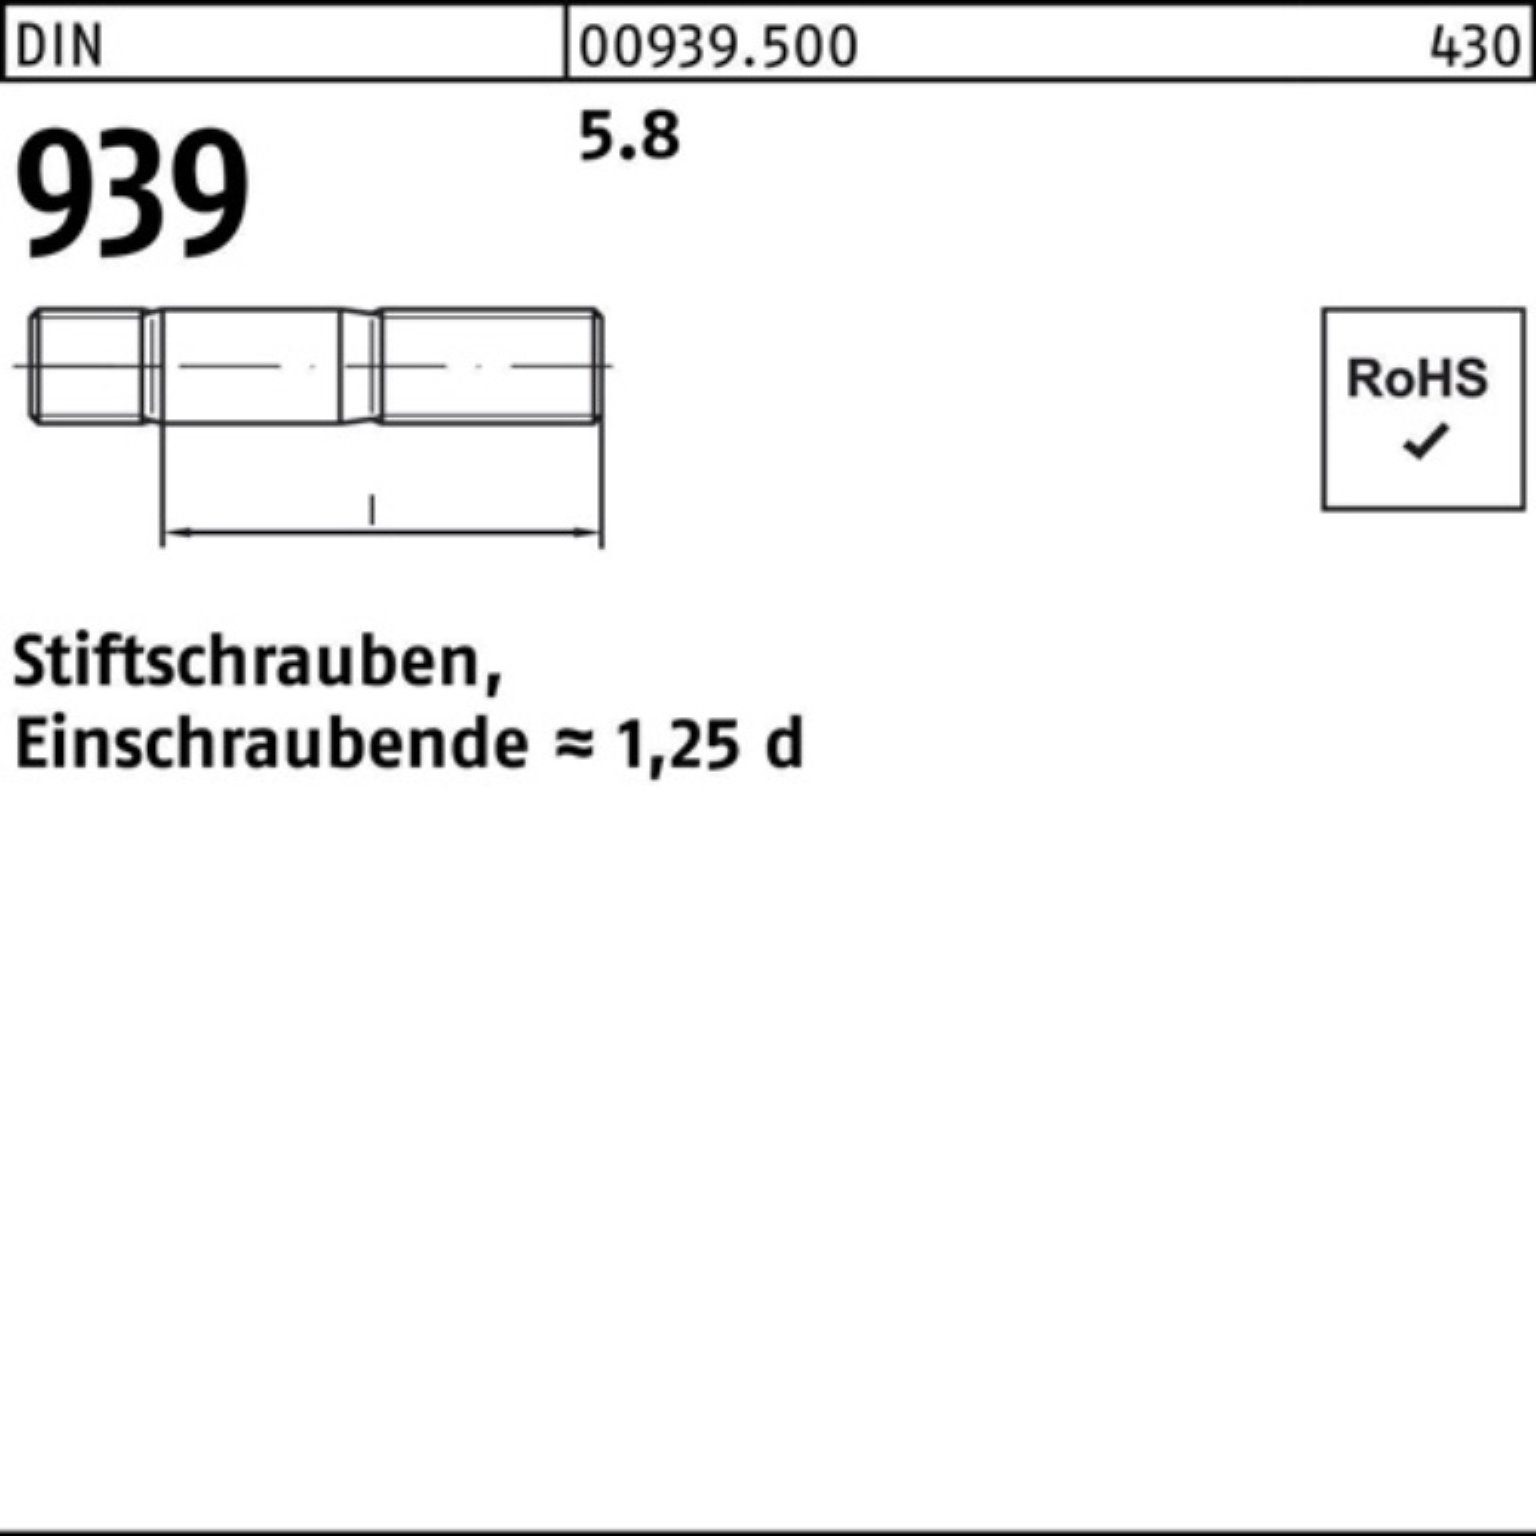 Reyher Stiftschraube 100er Pack 939 DIN M6x 100 5.8 Einschraubende=1,25d 18 Stiftschraube S